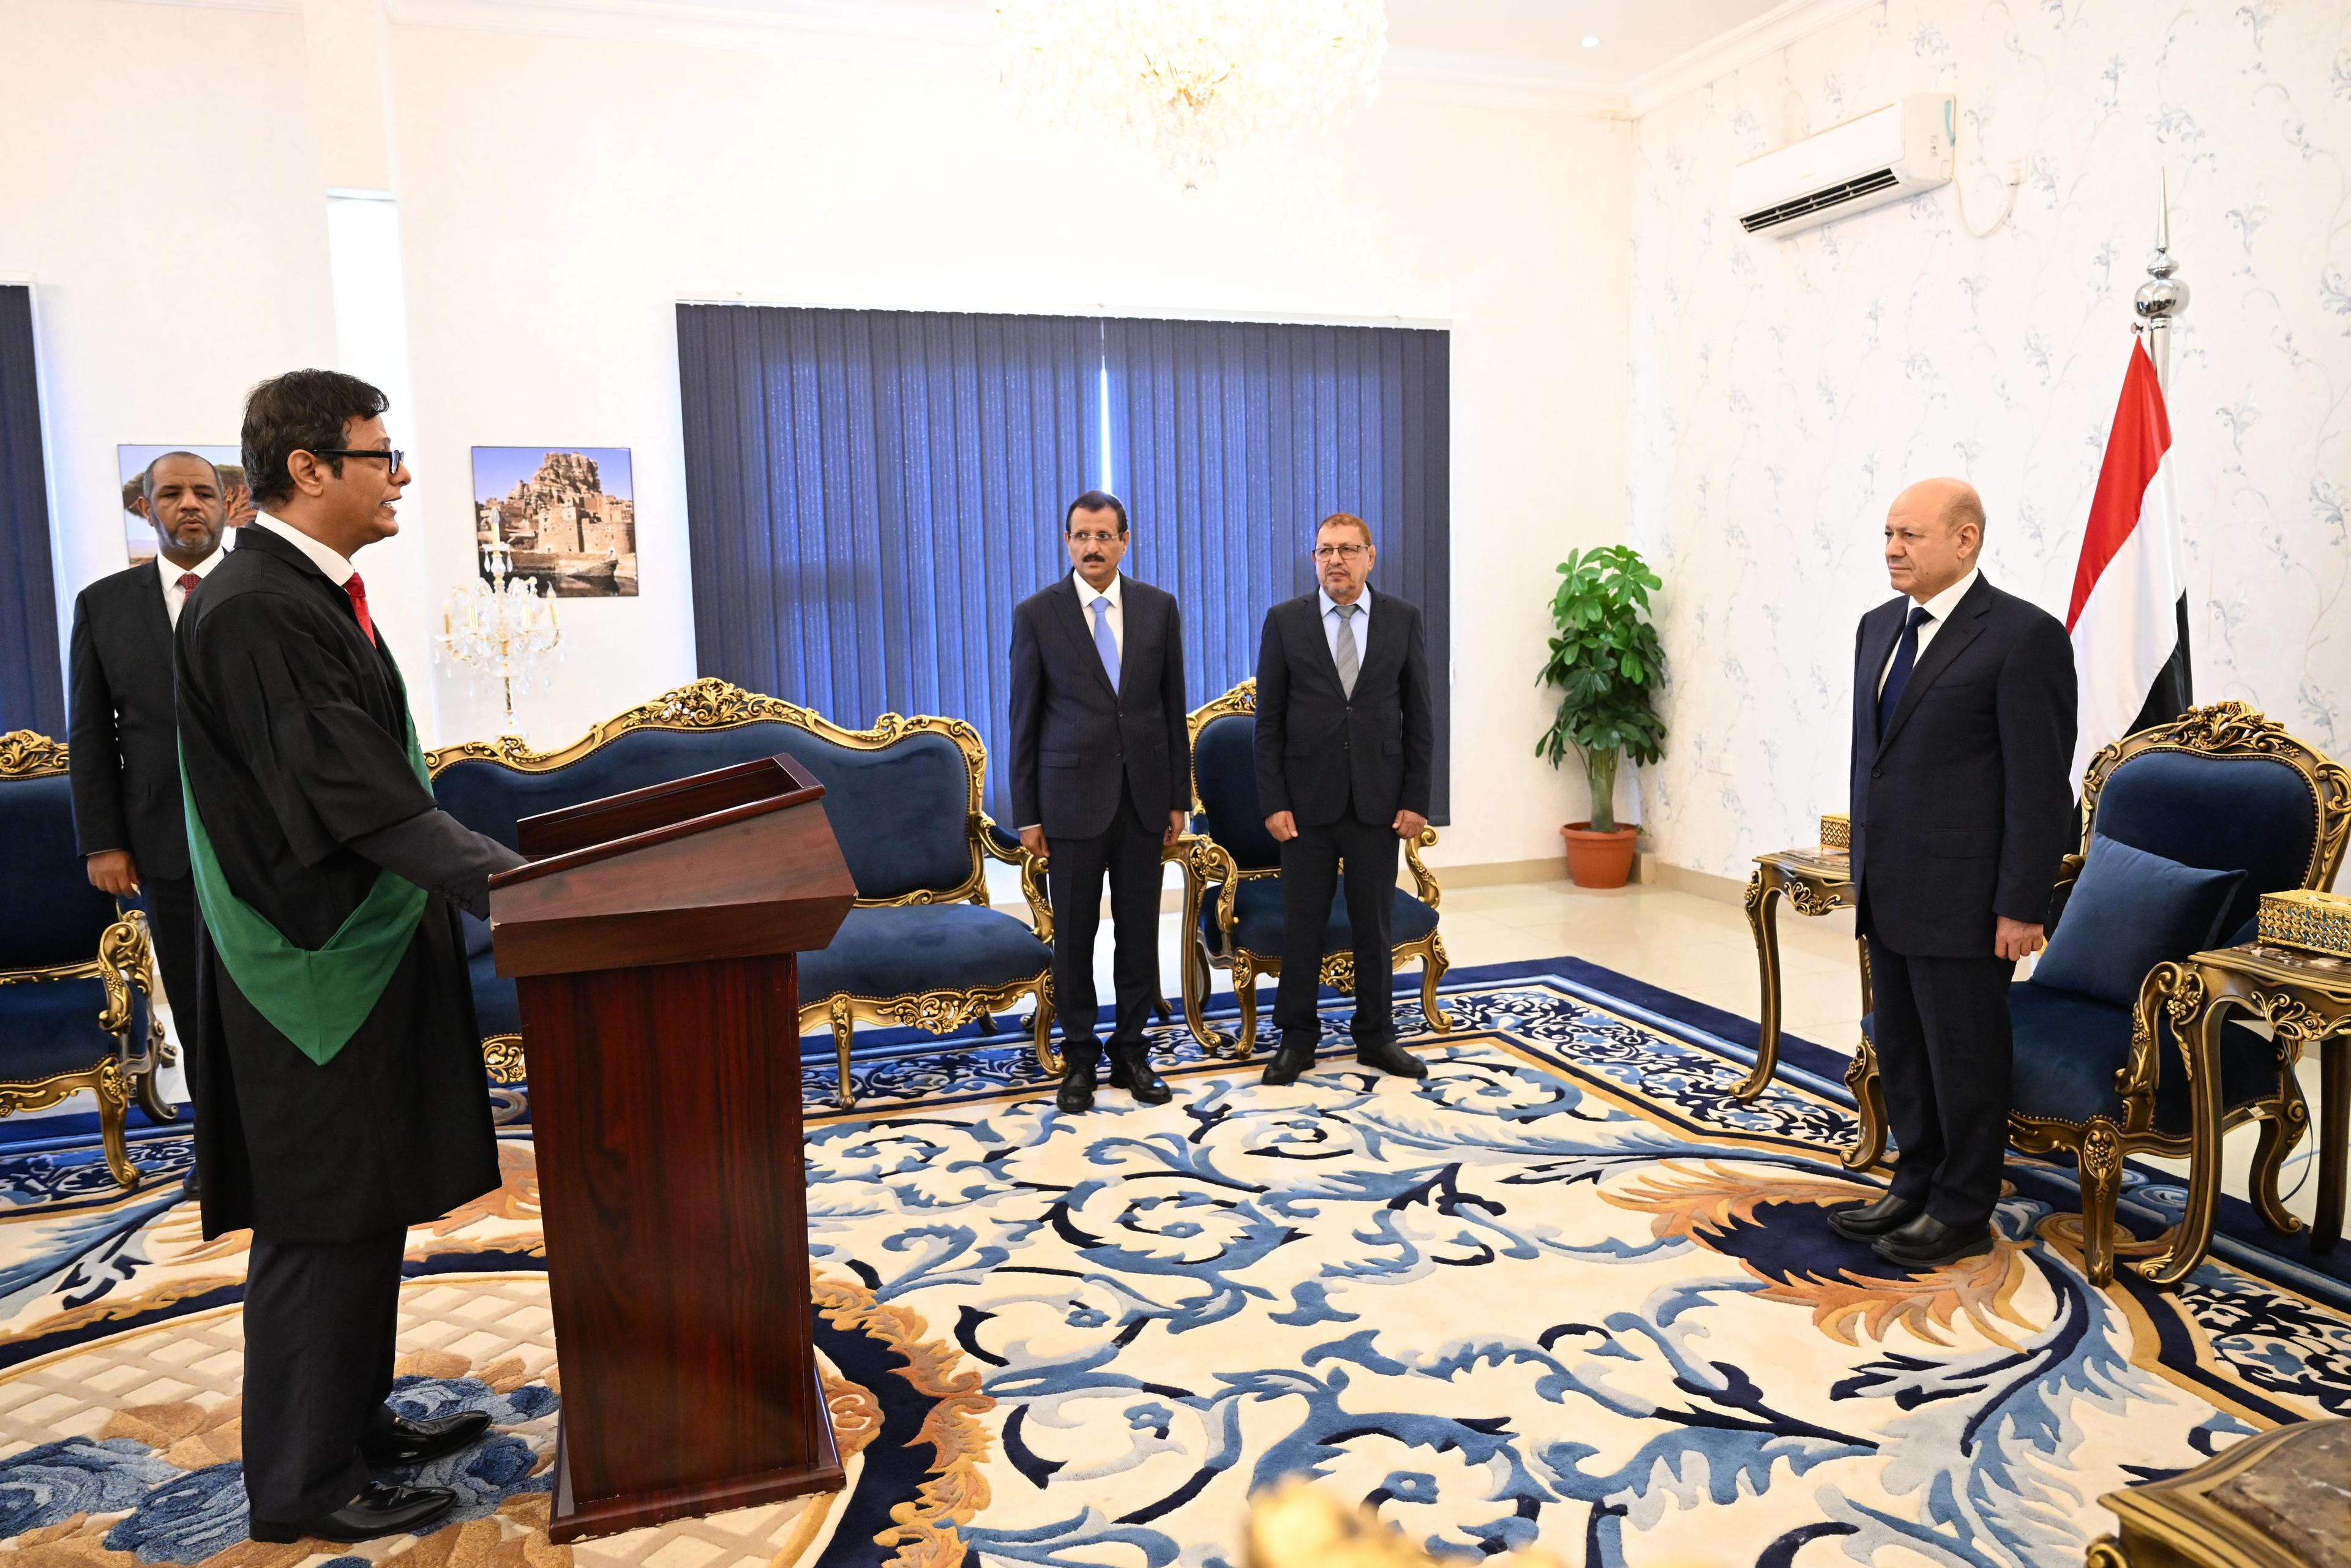 القاضي صالح المرفدي يؤدي اليمين القانونية امام رئيس مجلس القيادة الرئاسي